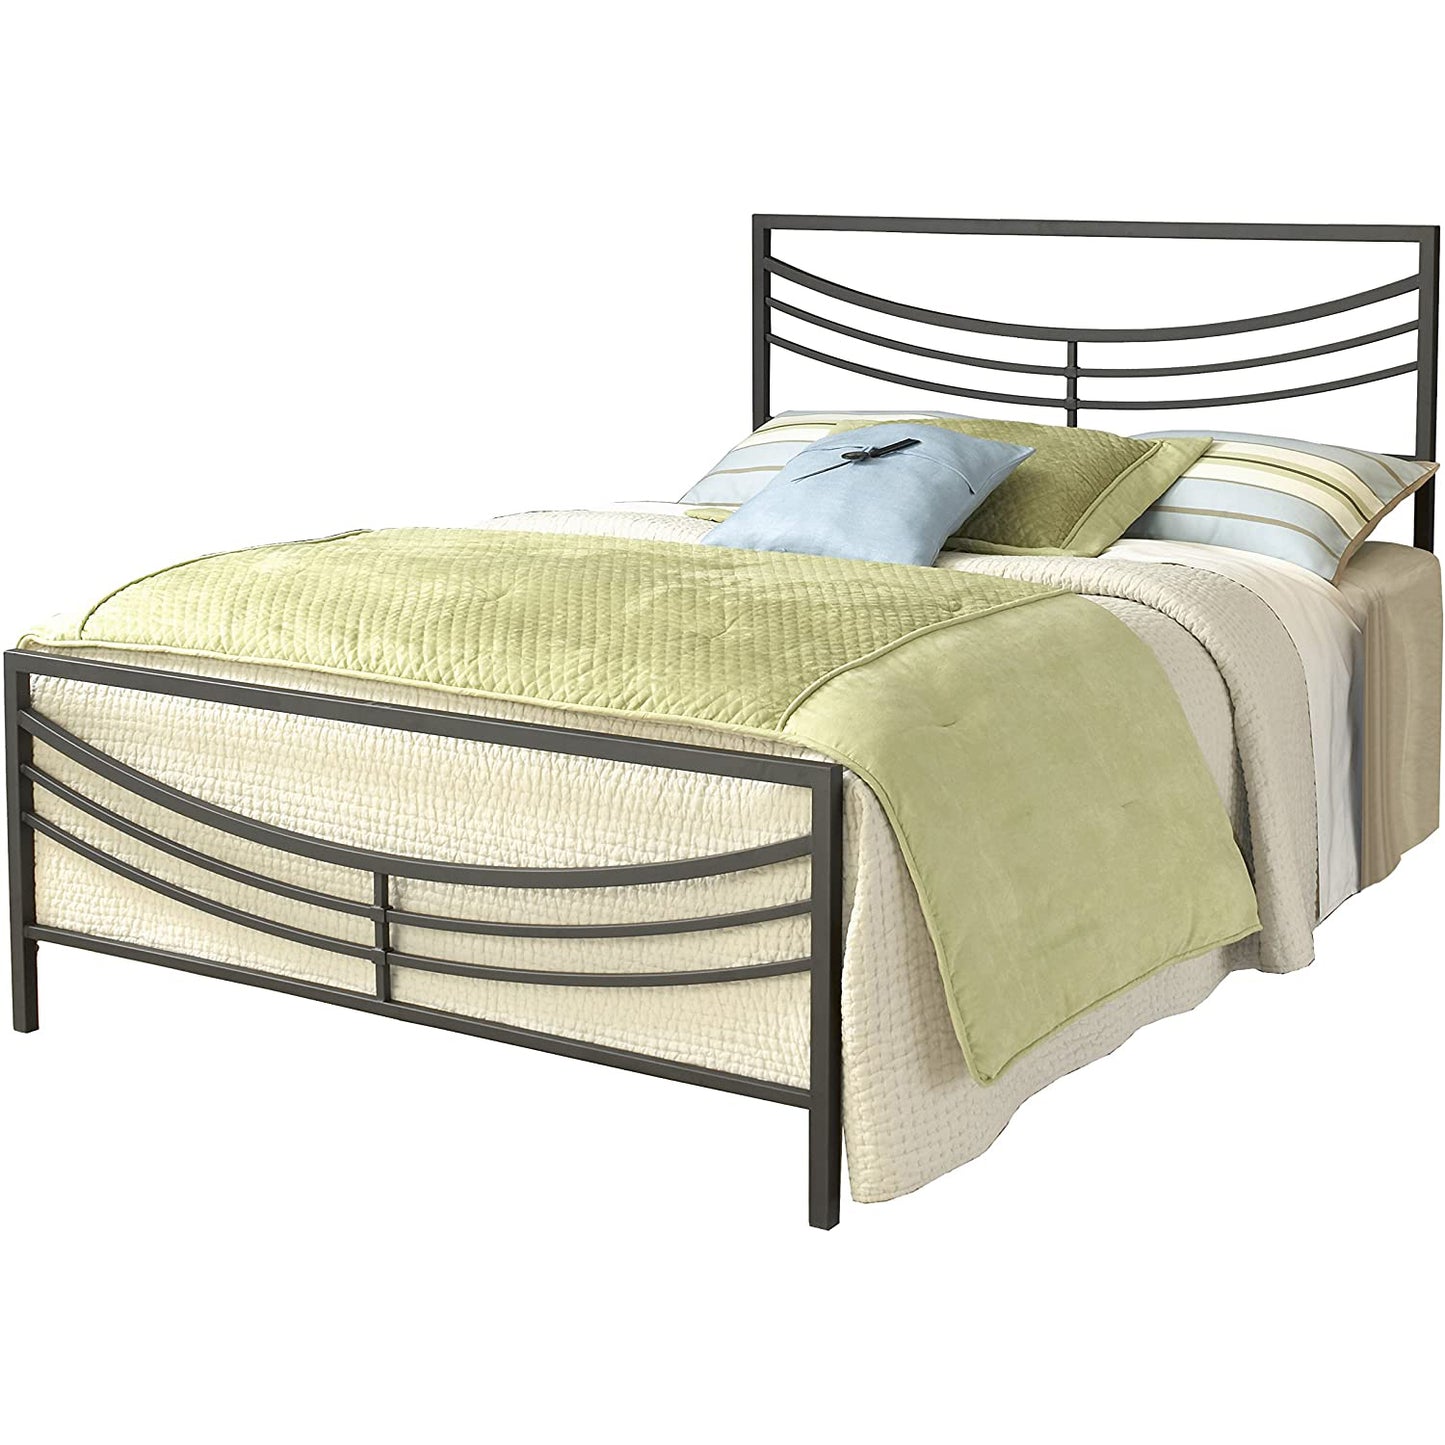 سرير معدن 140×200سم - ألوان متعددة - OSA2